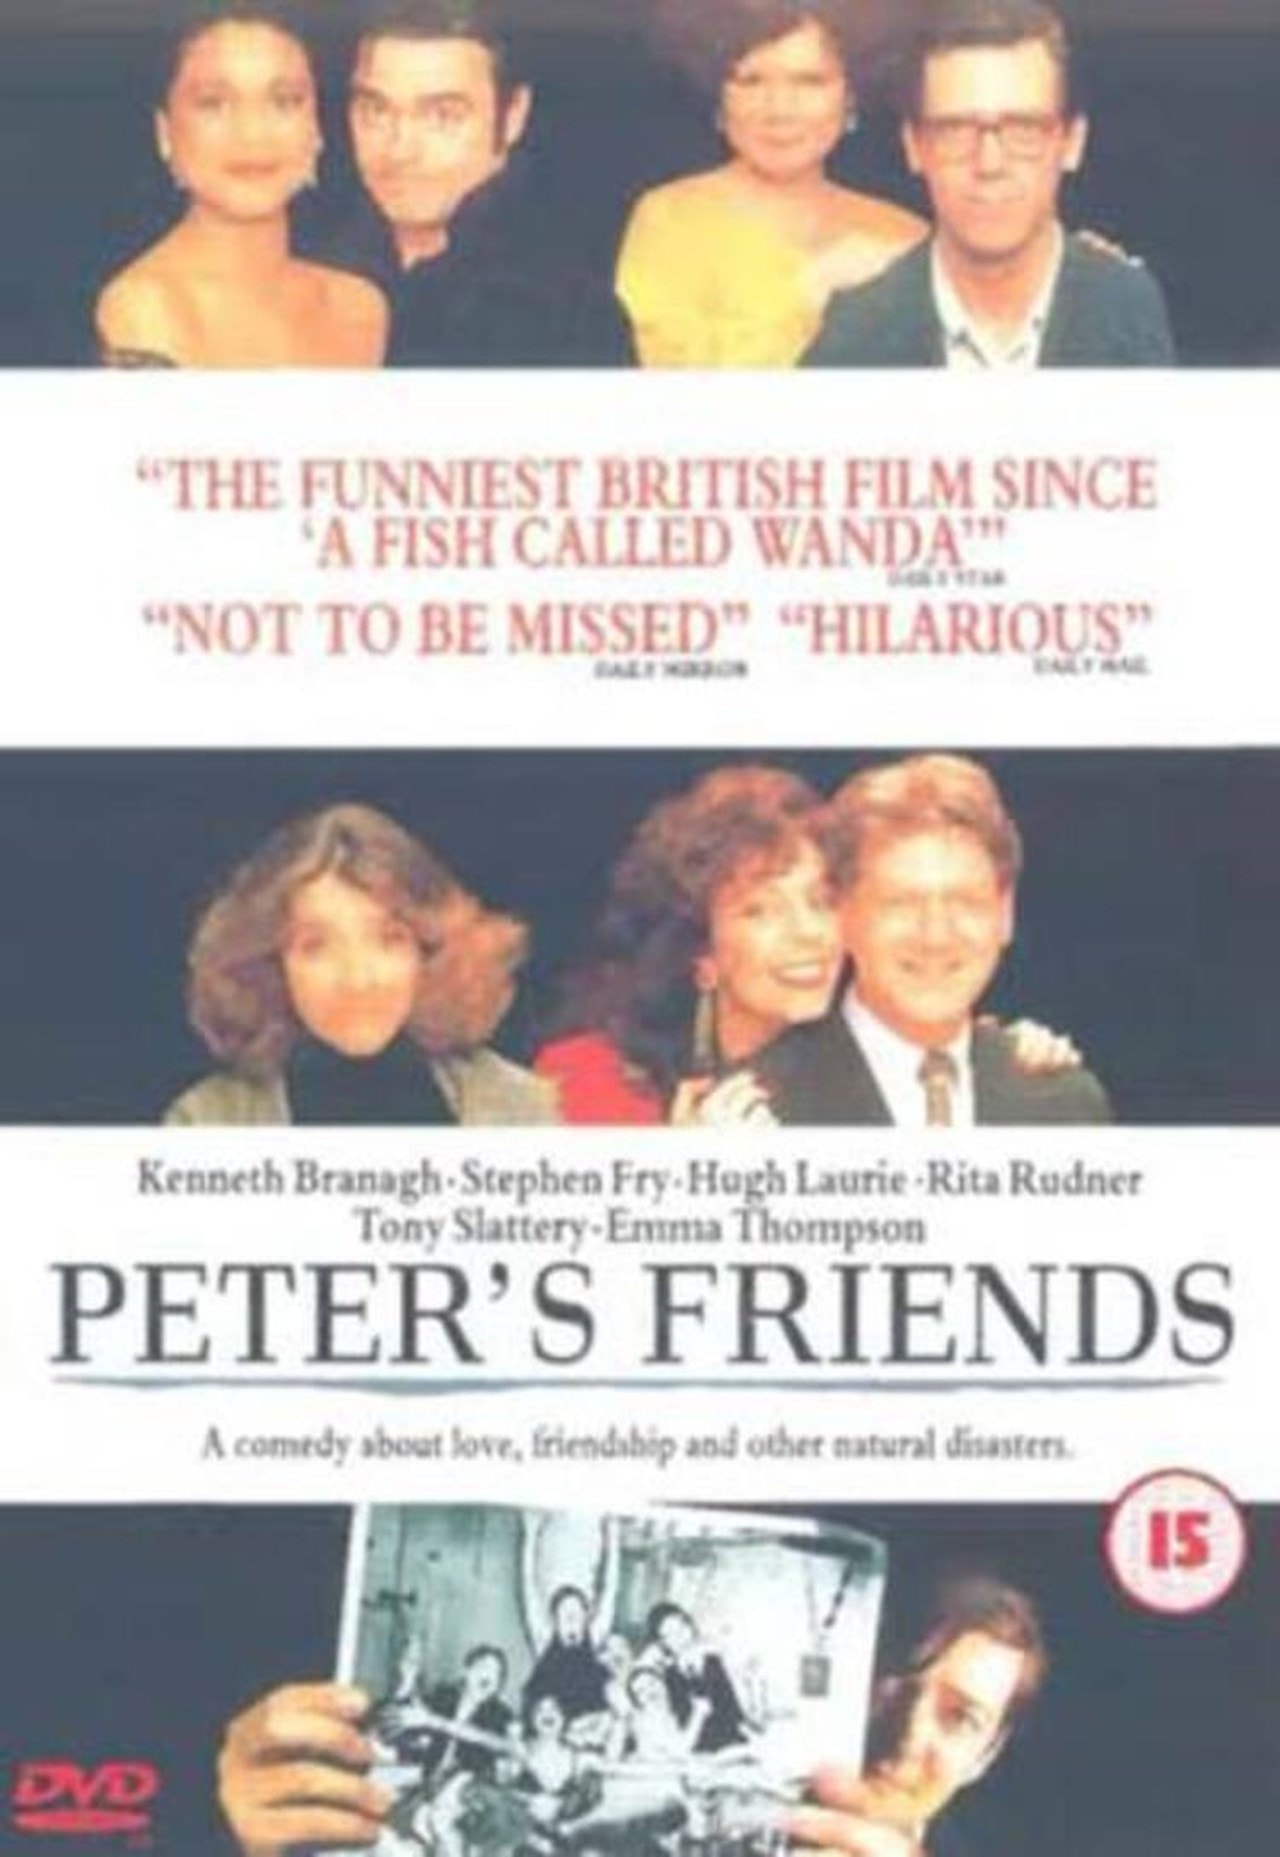 Peters friends. Peter's friends 1992. Друзья в Питере.